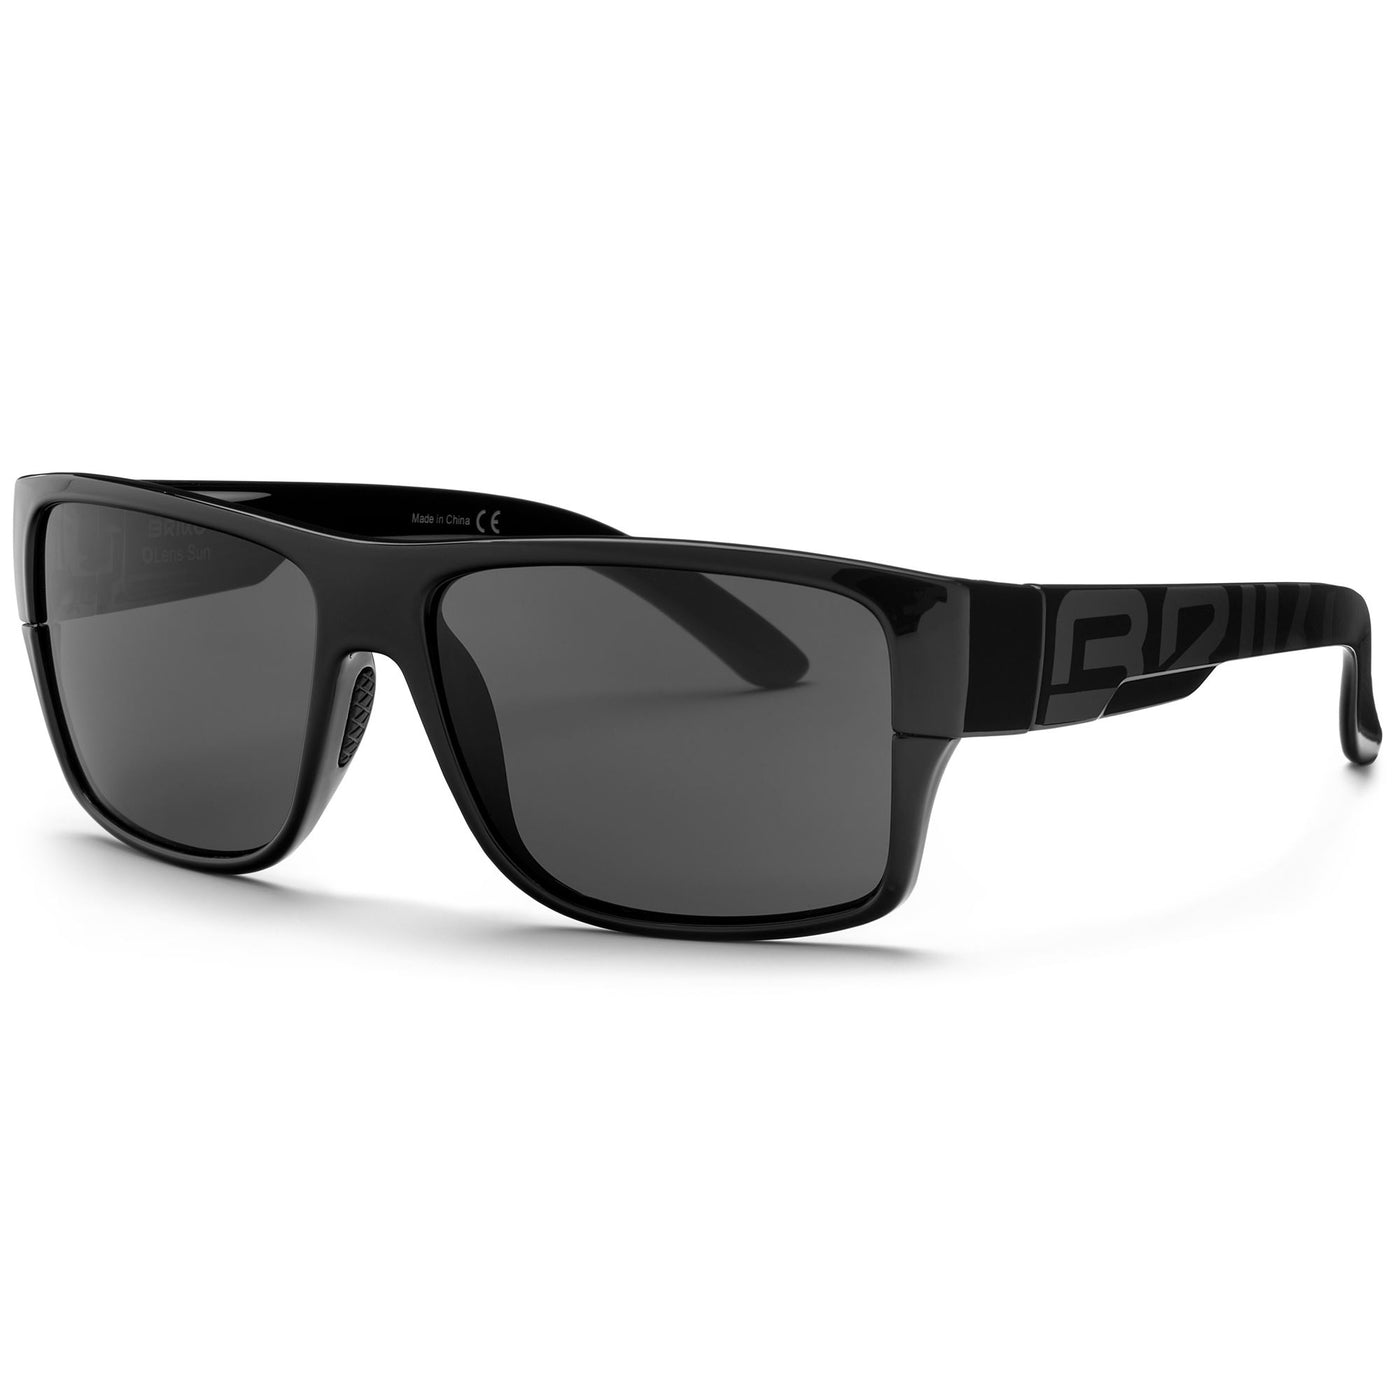 Glasses Unisex PATRIOT Sunglasses SH BLACK -SG3RM3 Dressed Side (jpg Rgb)		